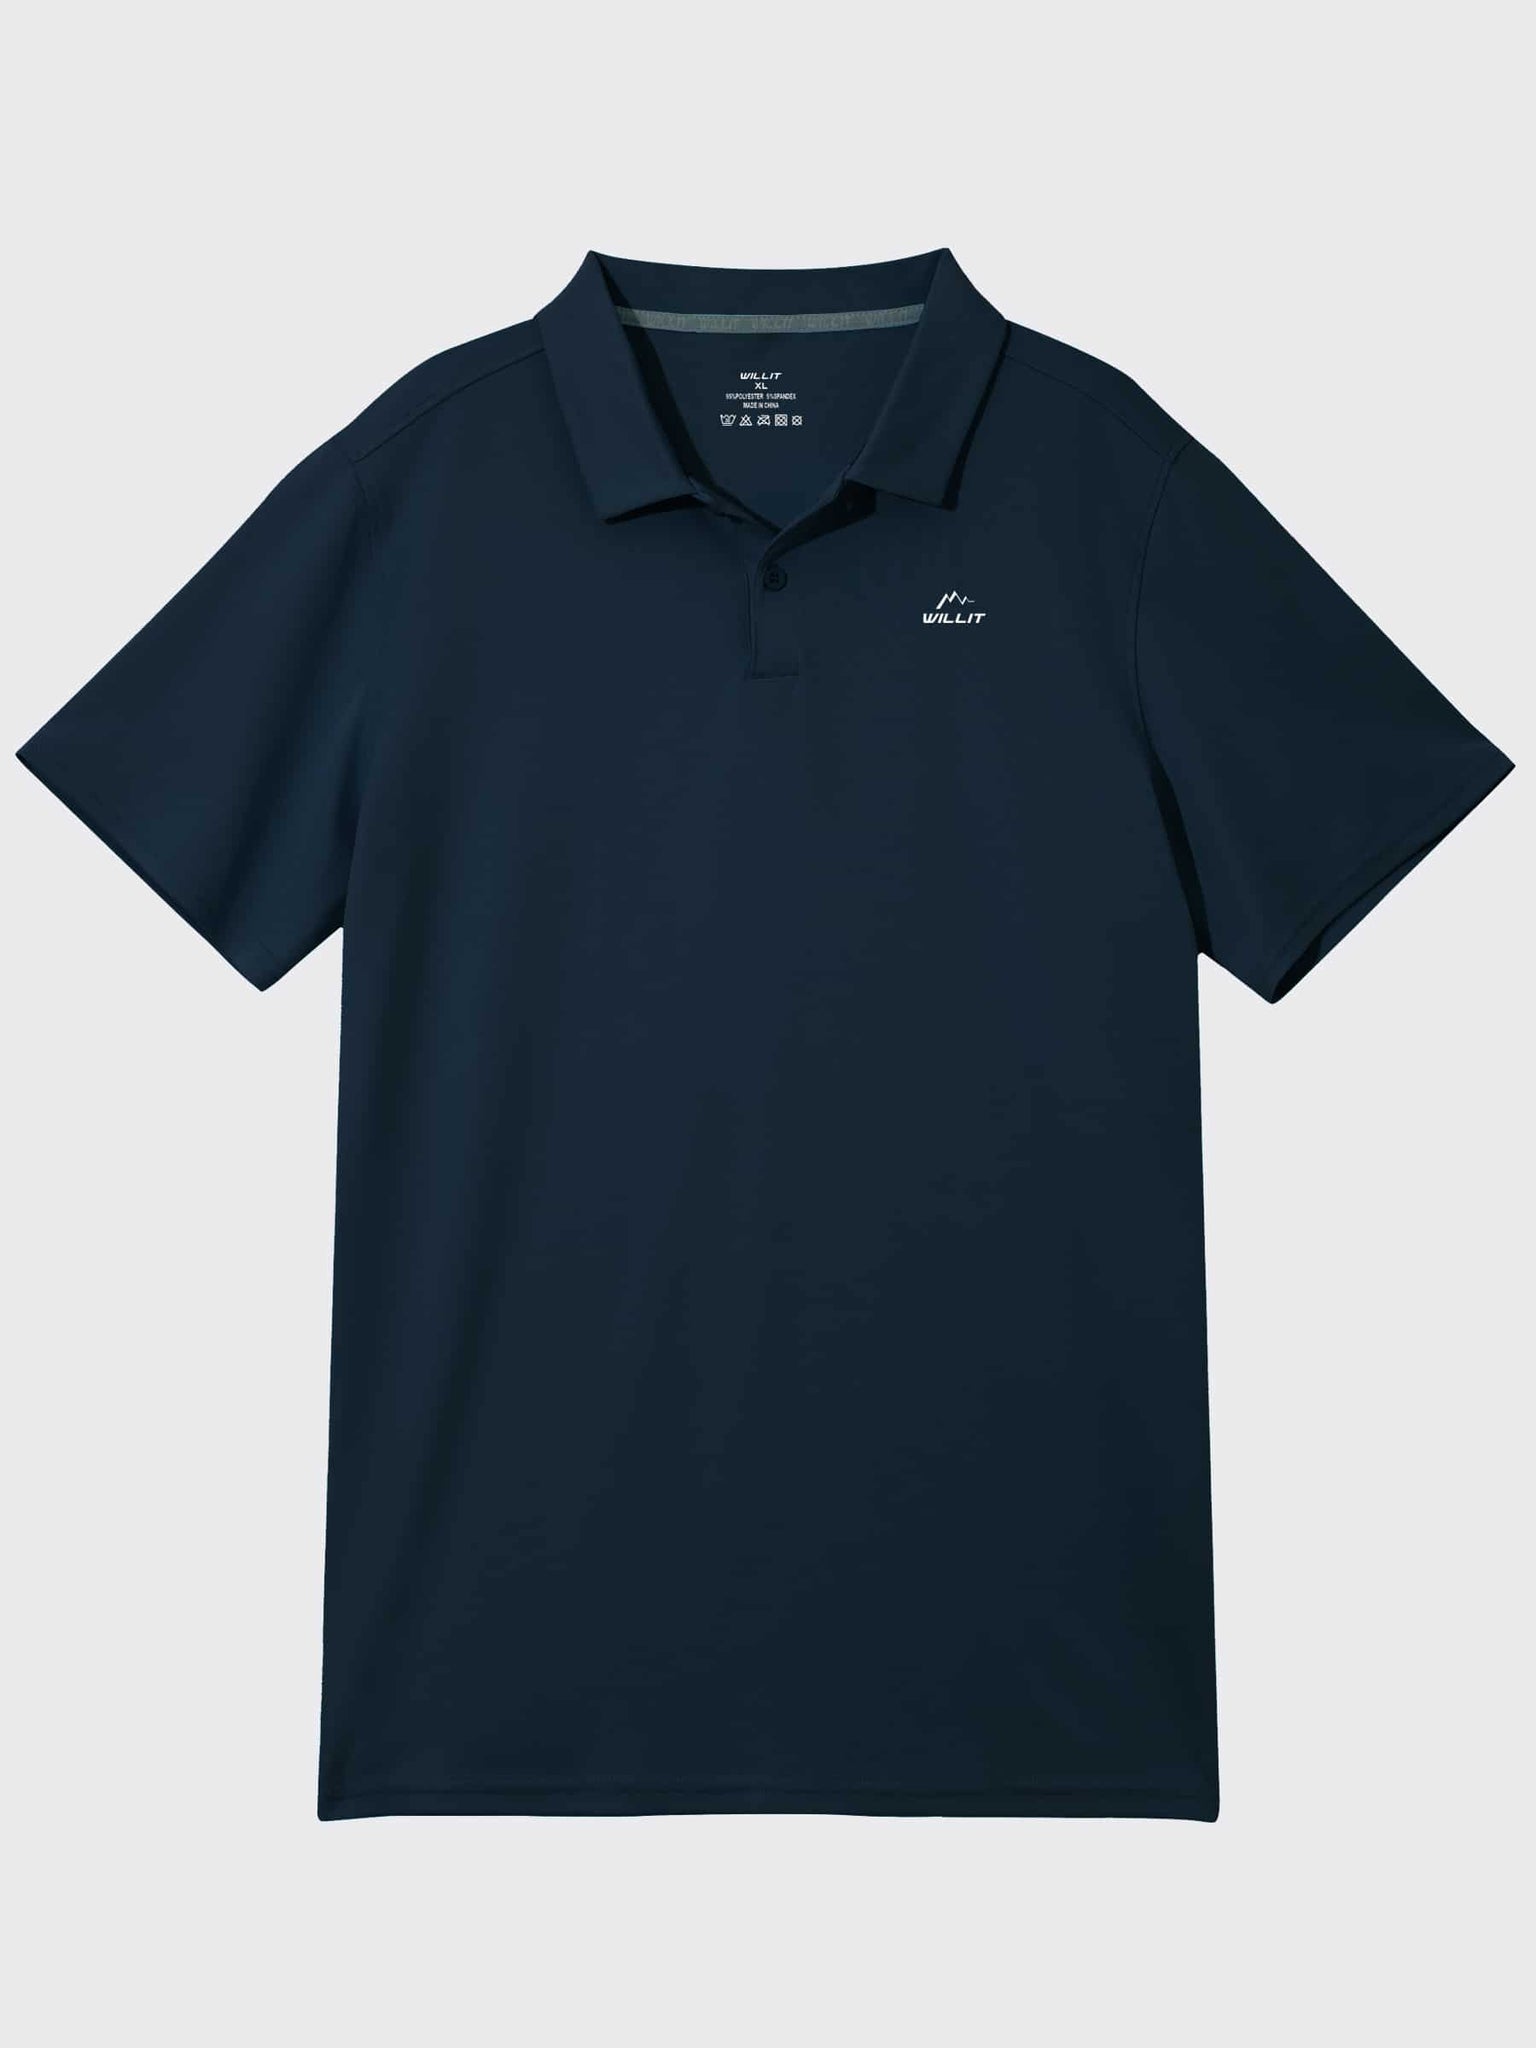 Youth Golf Polo Sun Shirts_Navy_laydown4